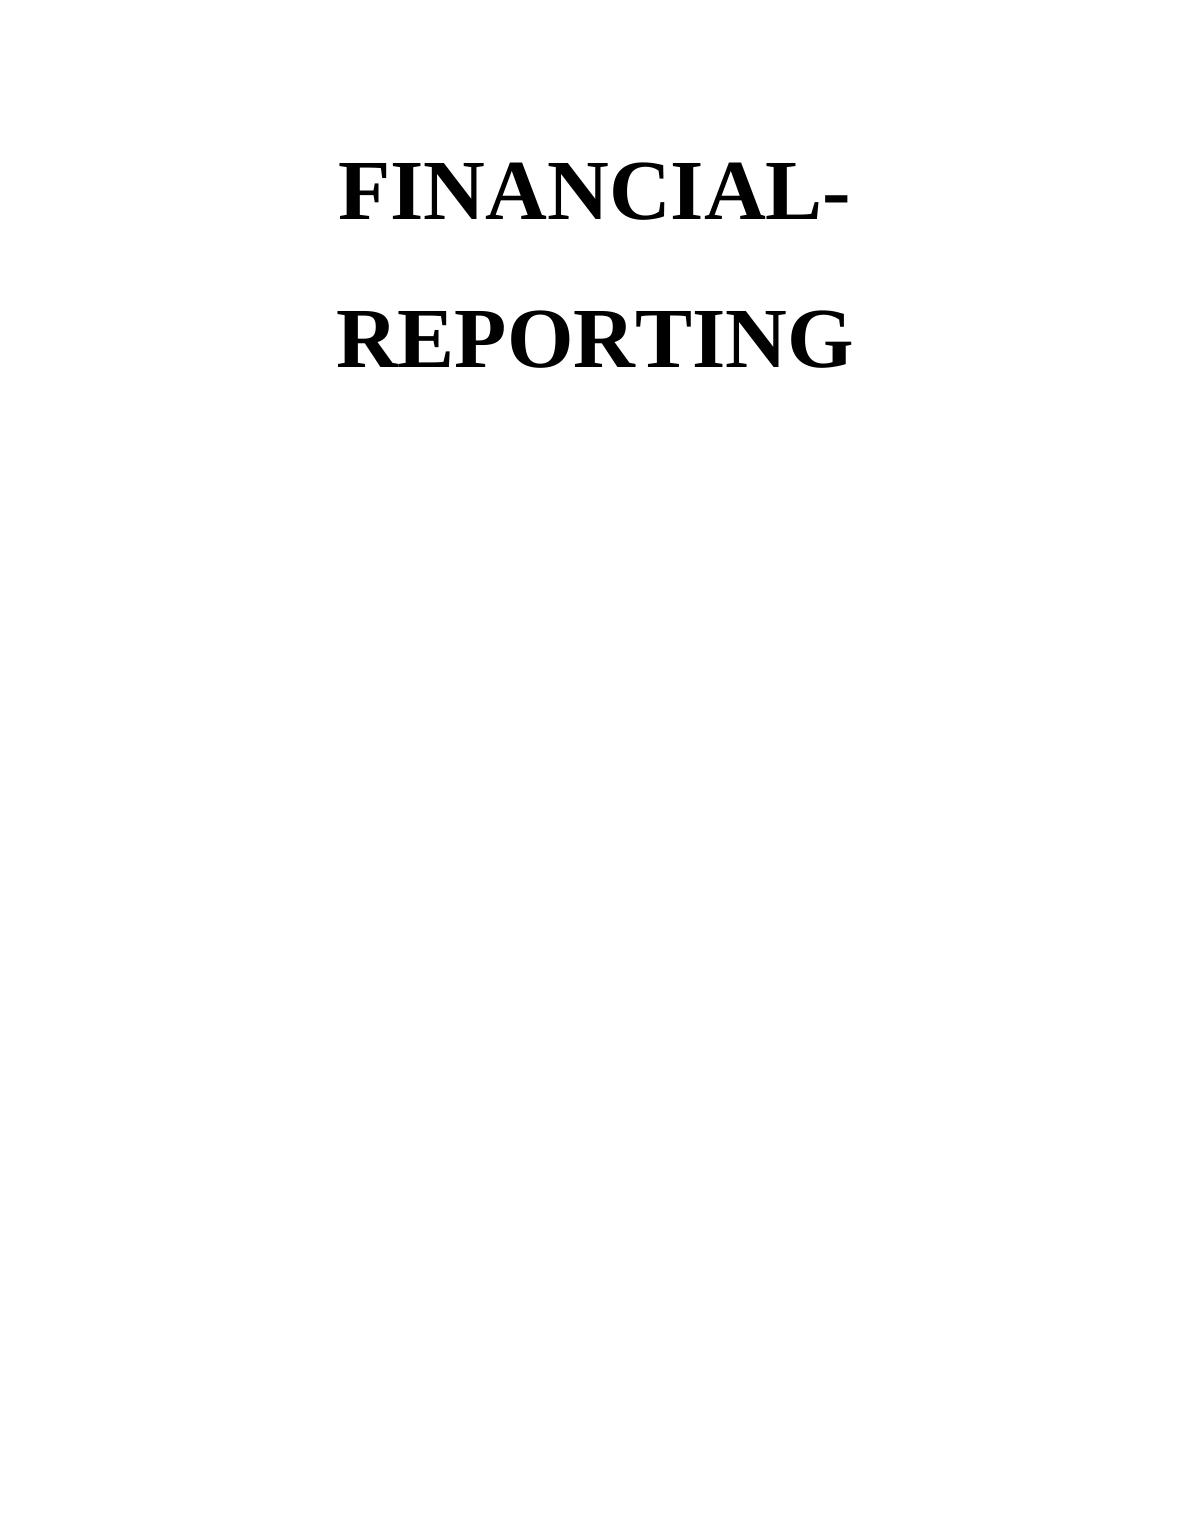 Financial-Reporting Regulatory Framework_1